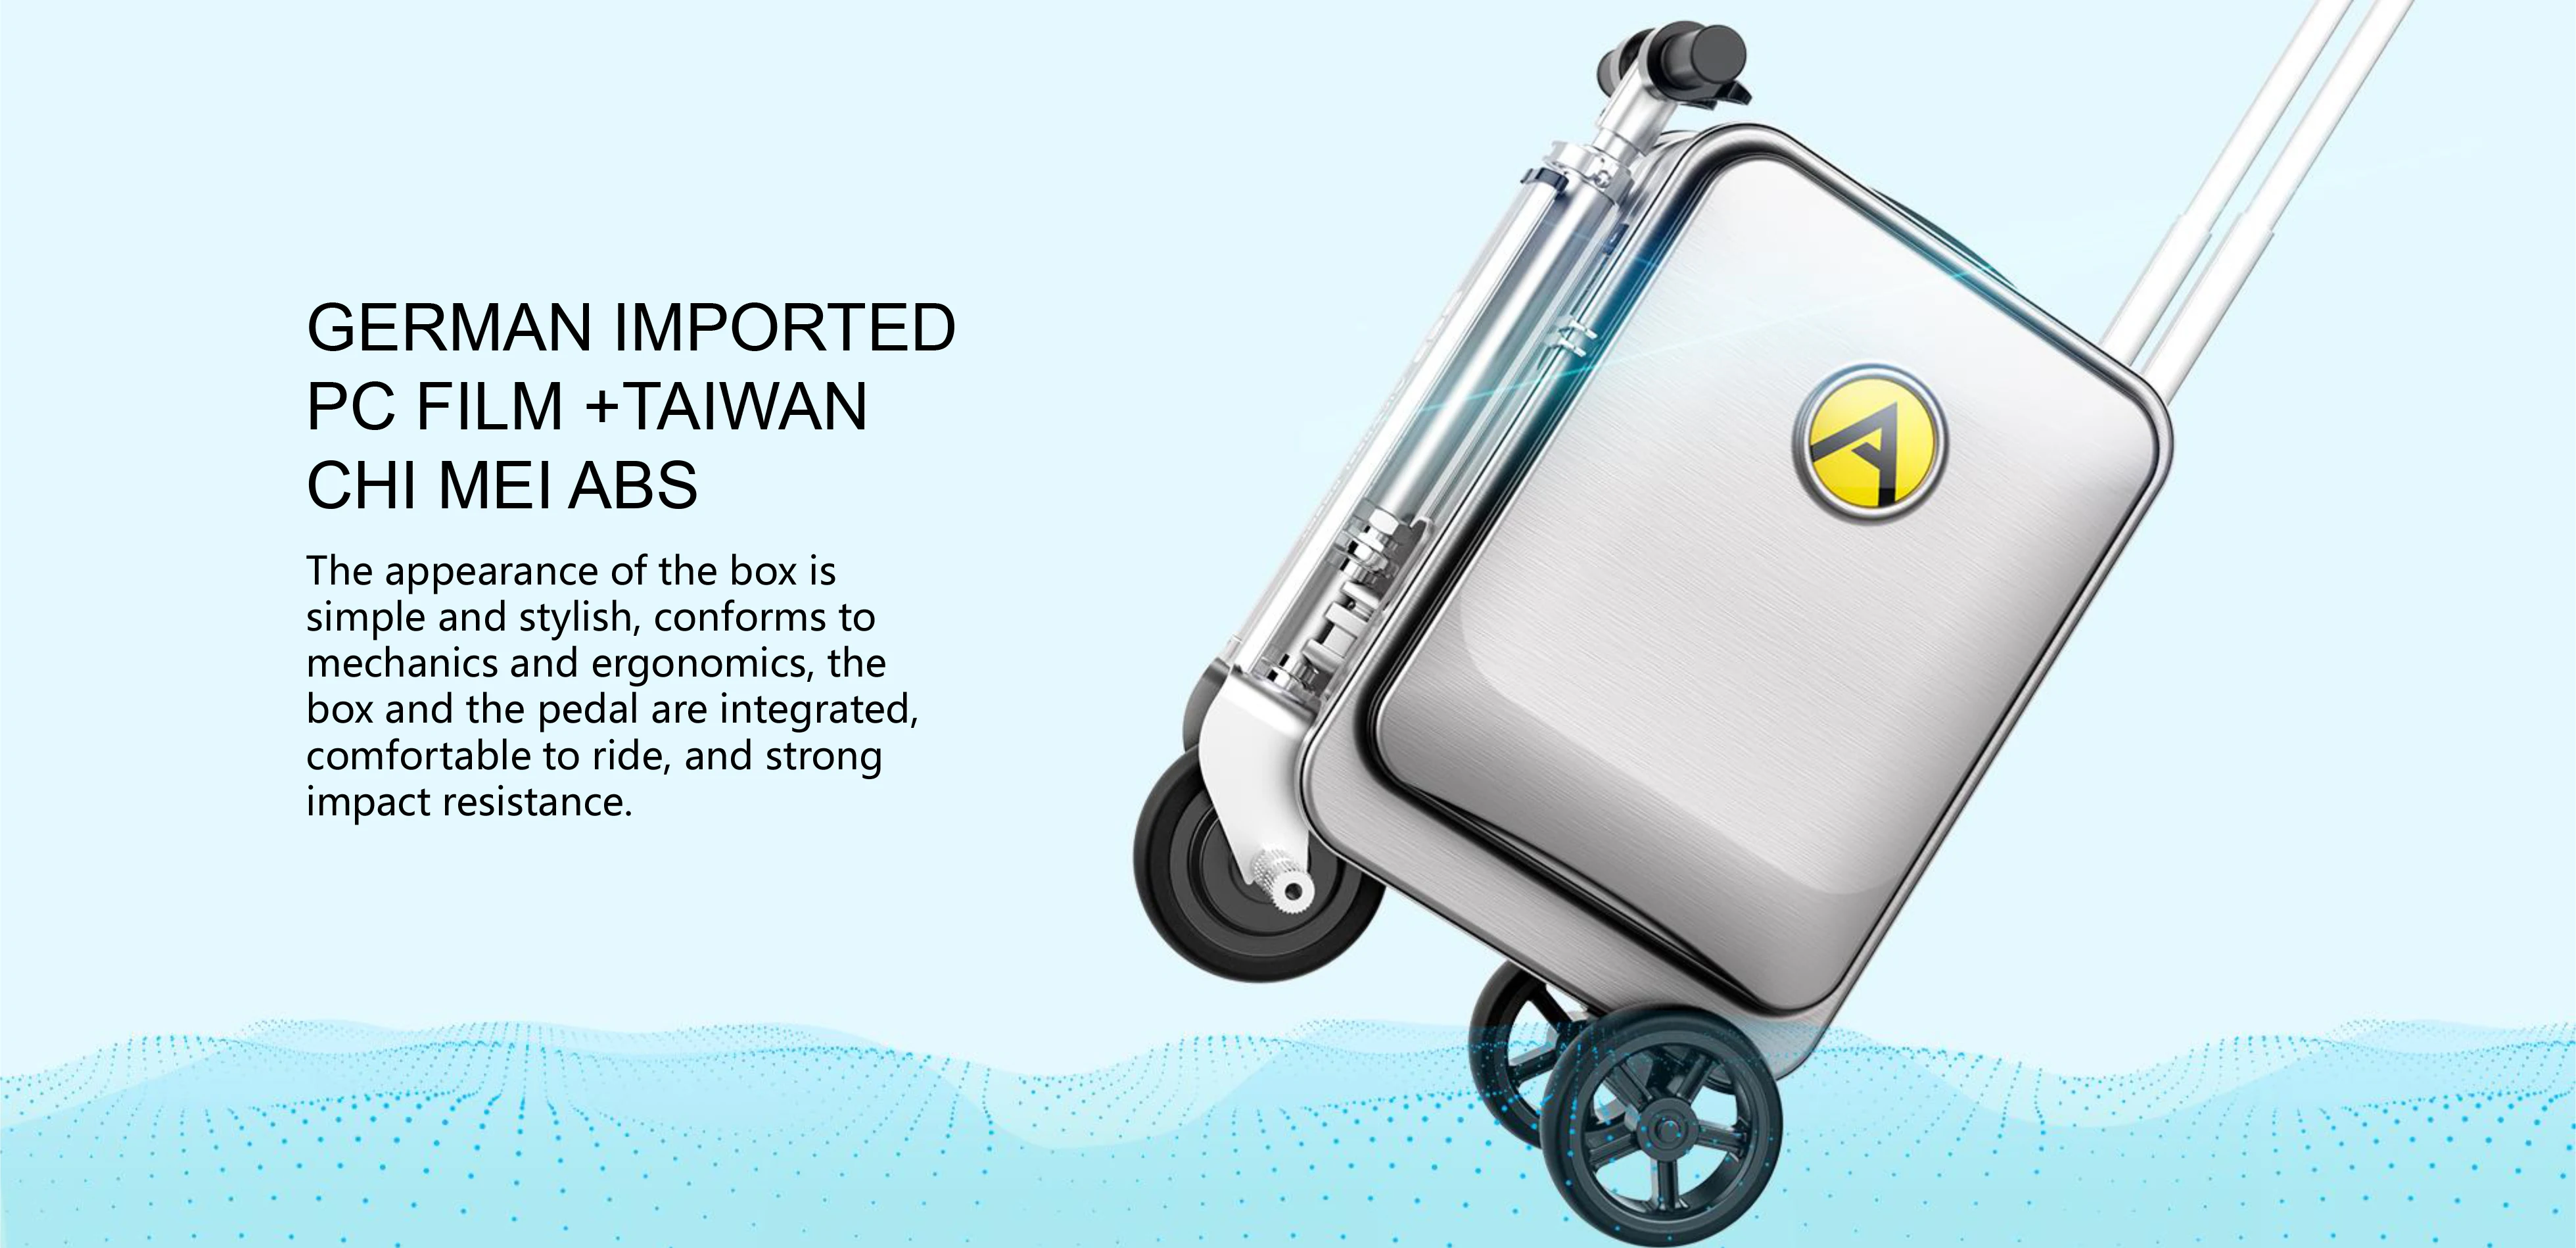 Equipaje para scooter inteligente: maleta con ruedas de viaje de mano - 20 pulgadas